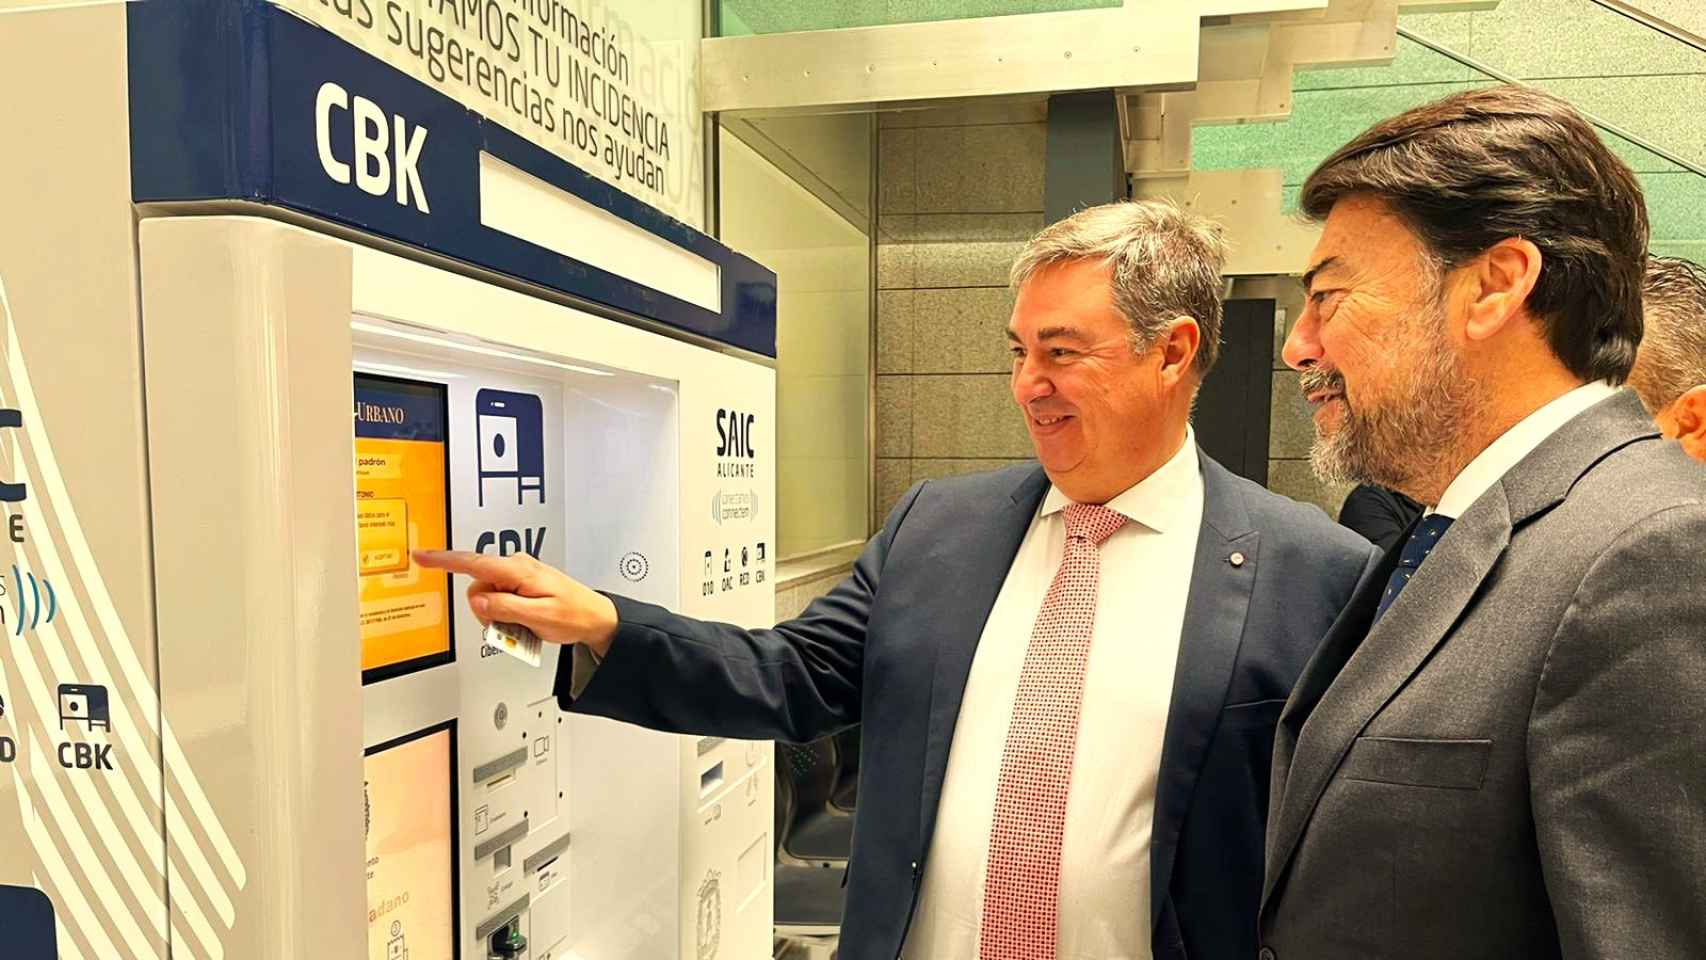 El alcalde Luis Barcala muestra al viceconsejero José Antonio Sánchez de Madrid el funcionamiento del ciberkiosco.